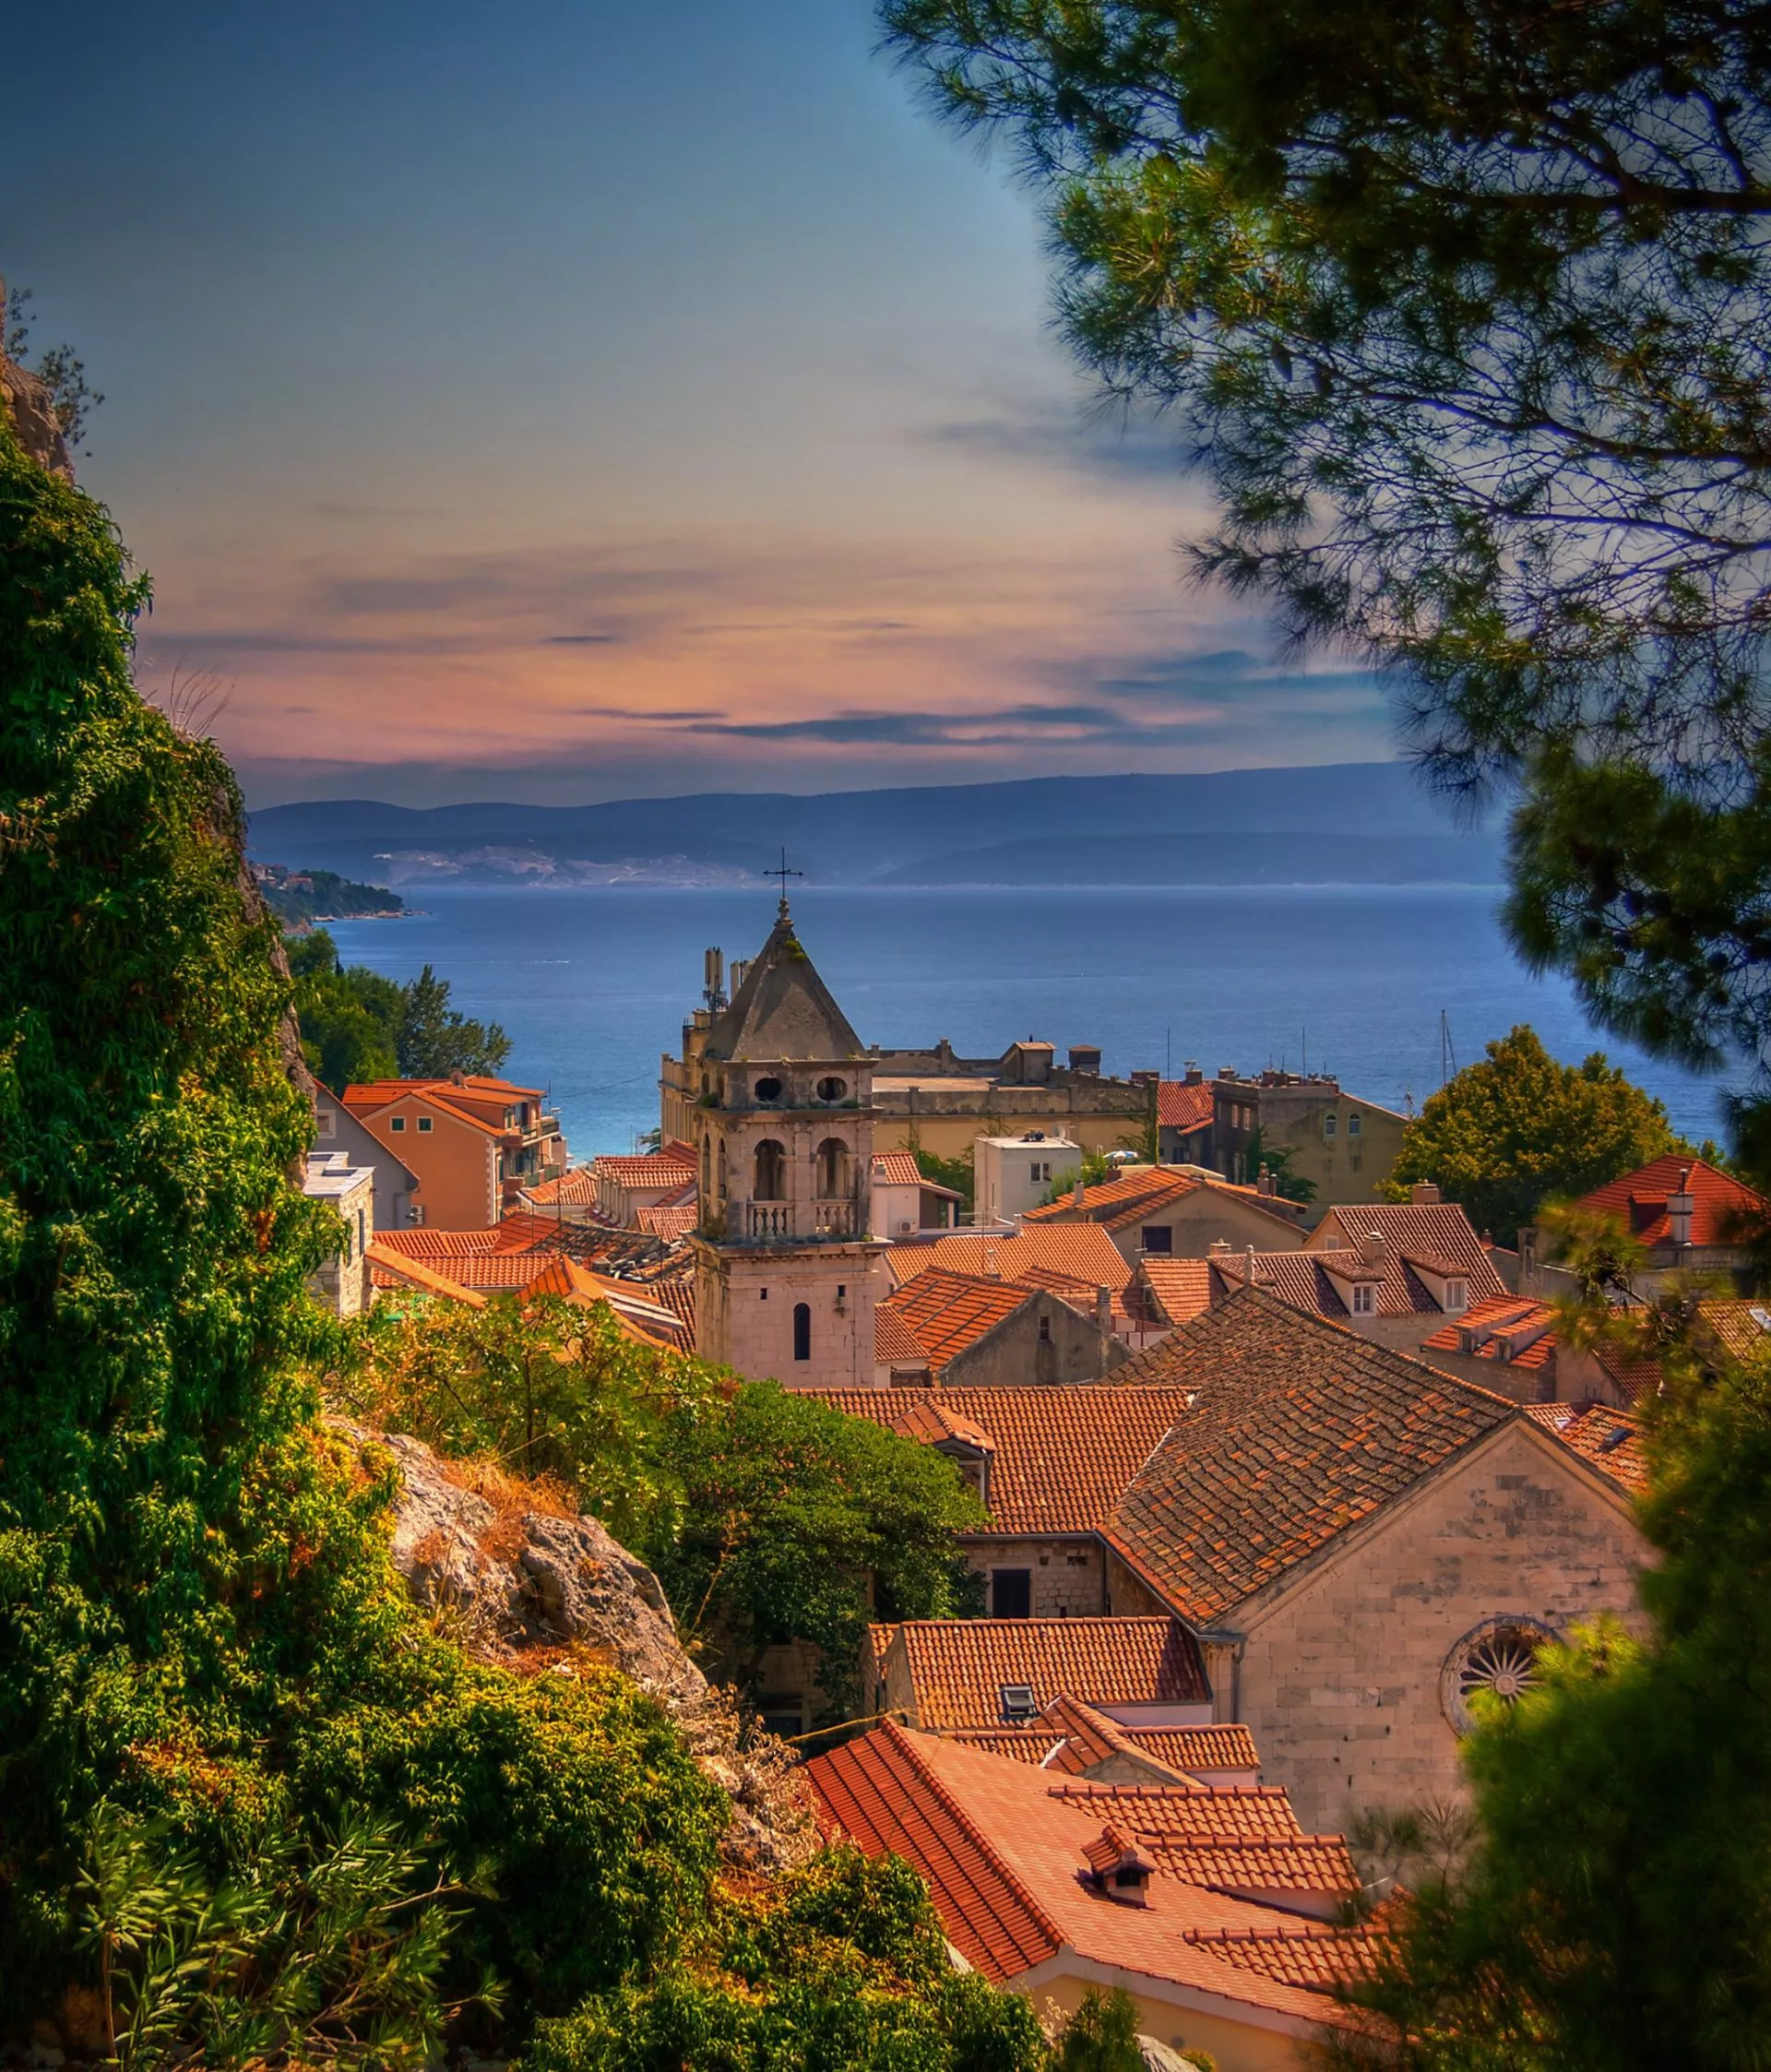 Blick auf die mediterrane Kleinstadt Omis, Dalmatien, Kroatien. Blick auf die mediterrane Kleinstadt Omis, Dalmatien, Kroatien.